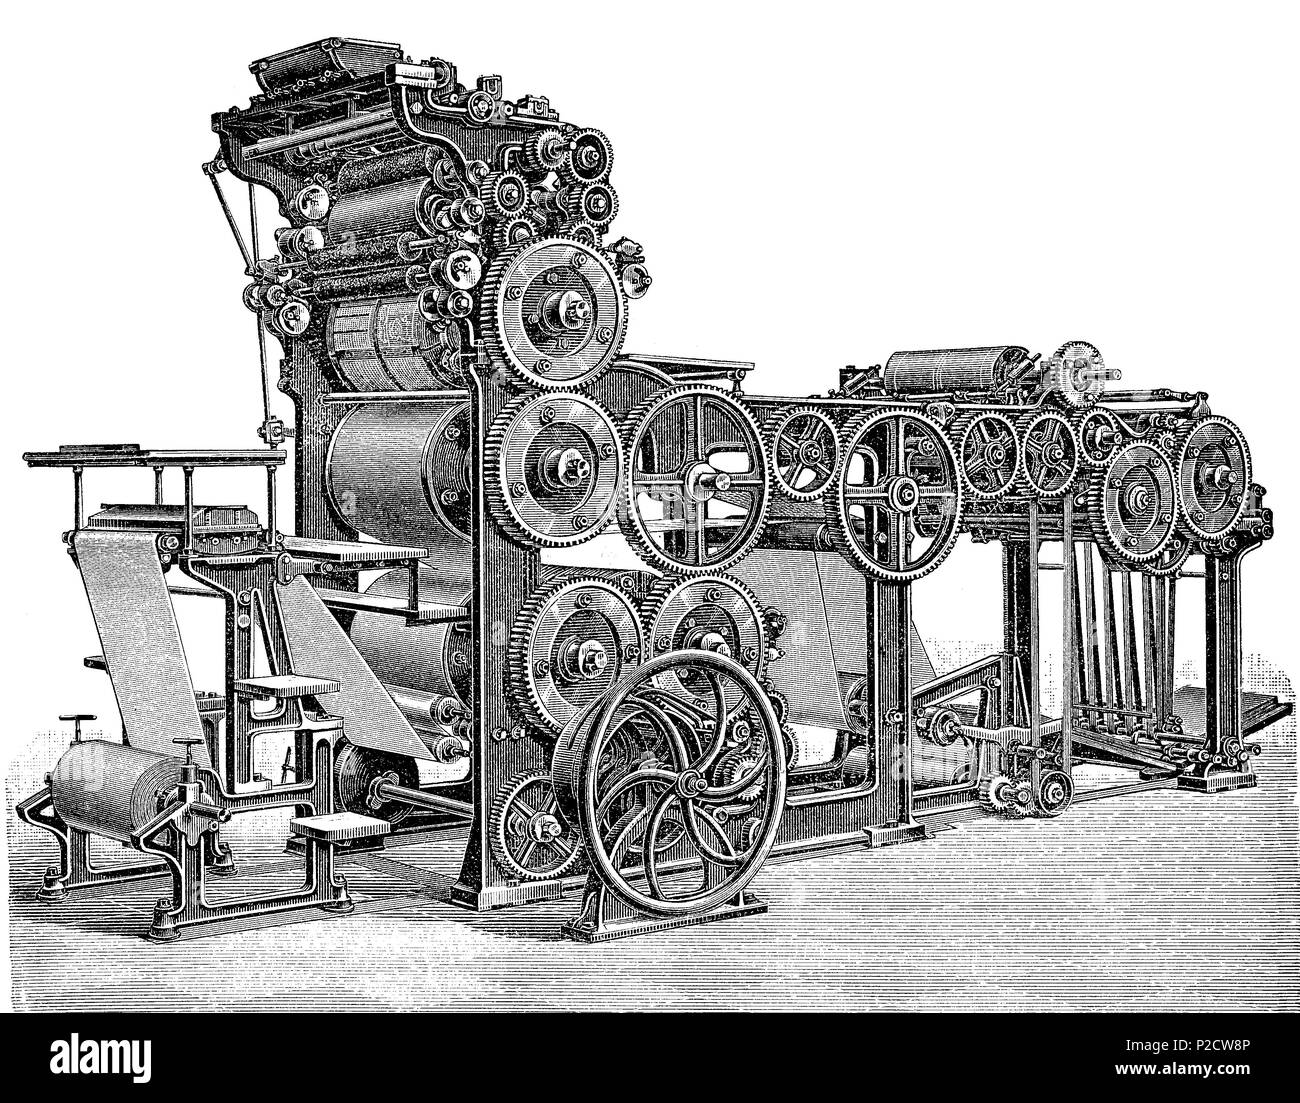 "Rotationspresse von Marinoni, Marinoni Presse von 1883, Joseph Auguste Marinoni, 1823 - 1904, wurde ein Erbauer von Rotationsdruckmaschinen; die meisten der Tiefdruck Prozess', digital verbesserte Reproduktion von einem ursprünglichen Drucken aus dem 19. Jahrhundert, 1881 Stockfoto